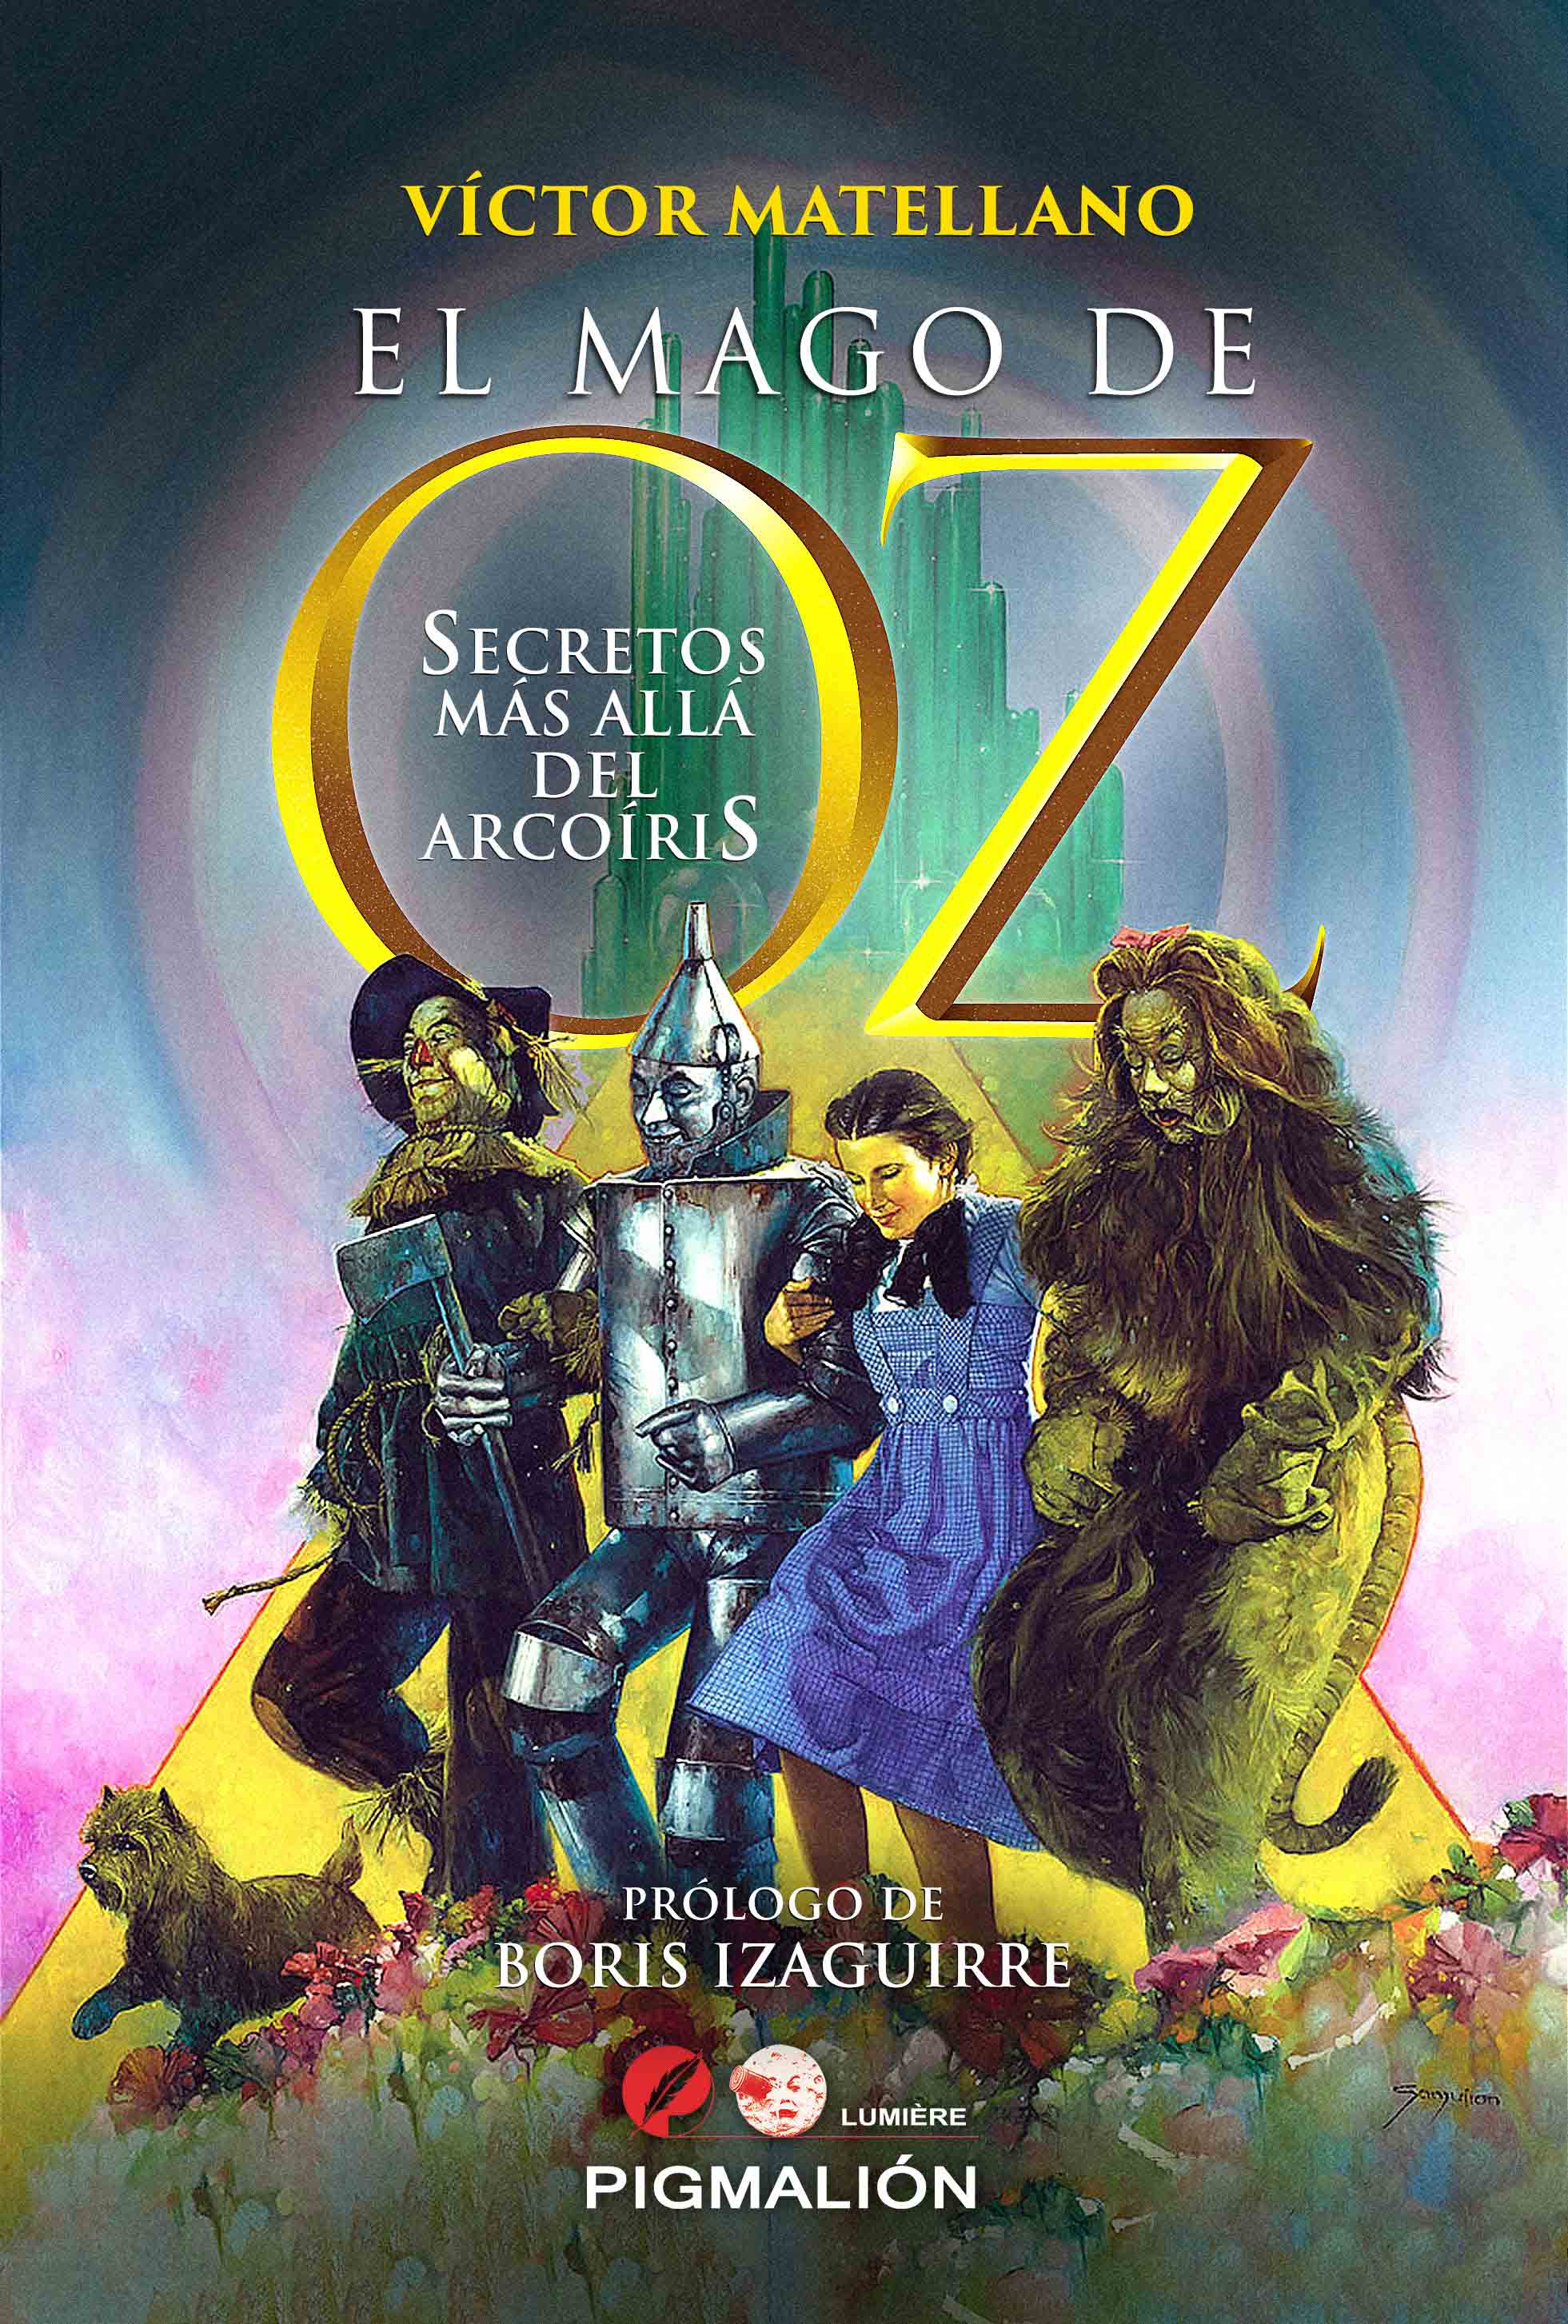 📰 presenta el libro 'El Mago de Oz. Secretos allá arcoiris'